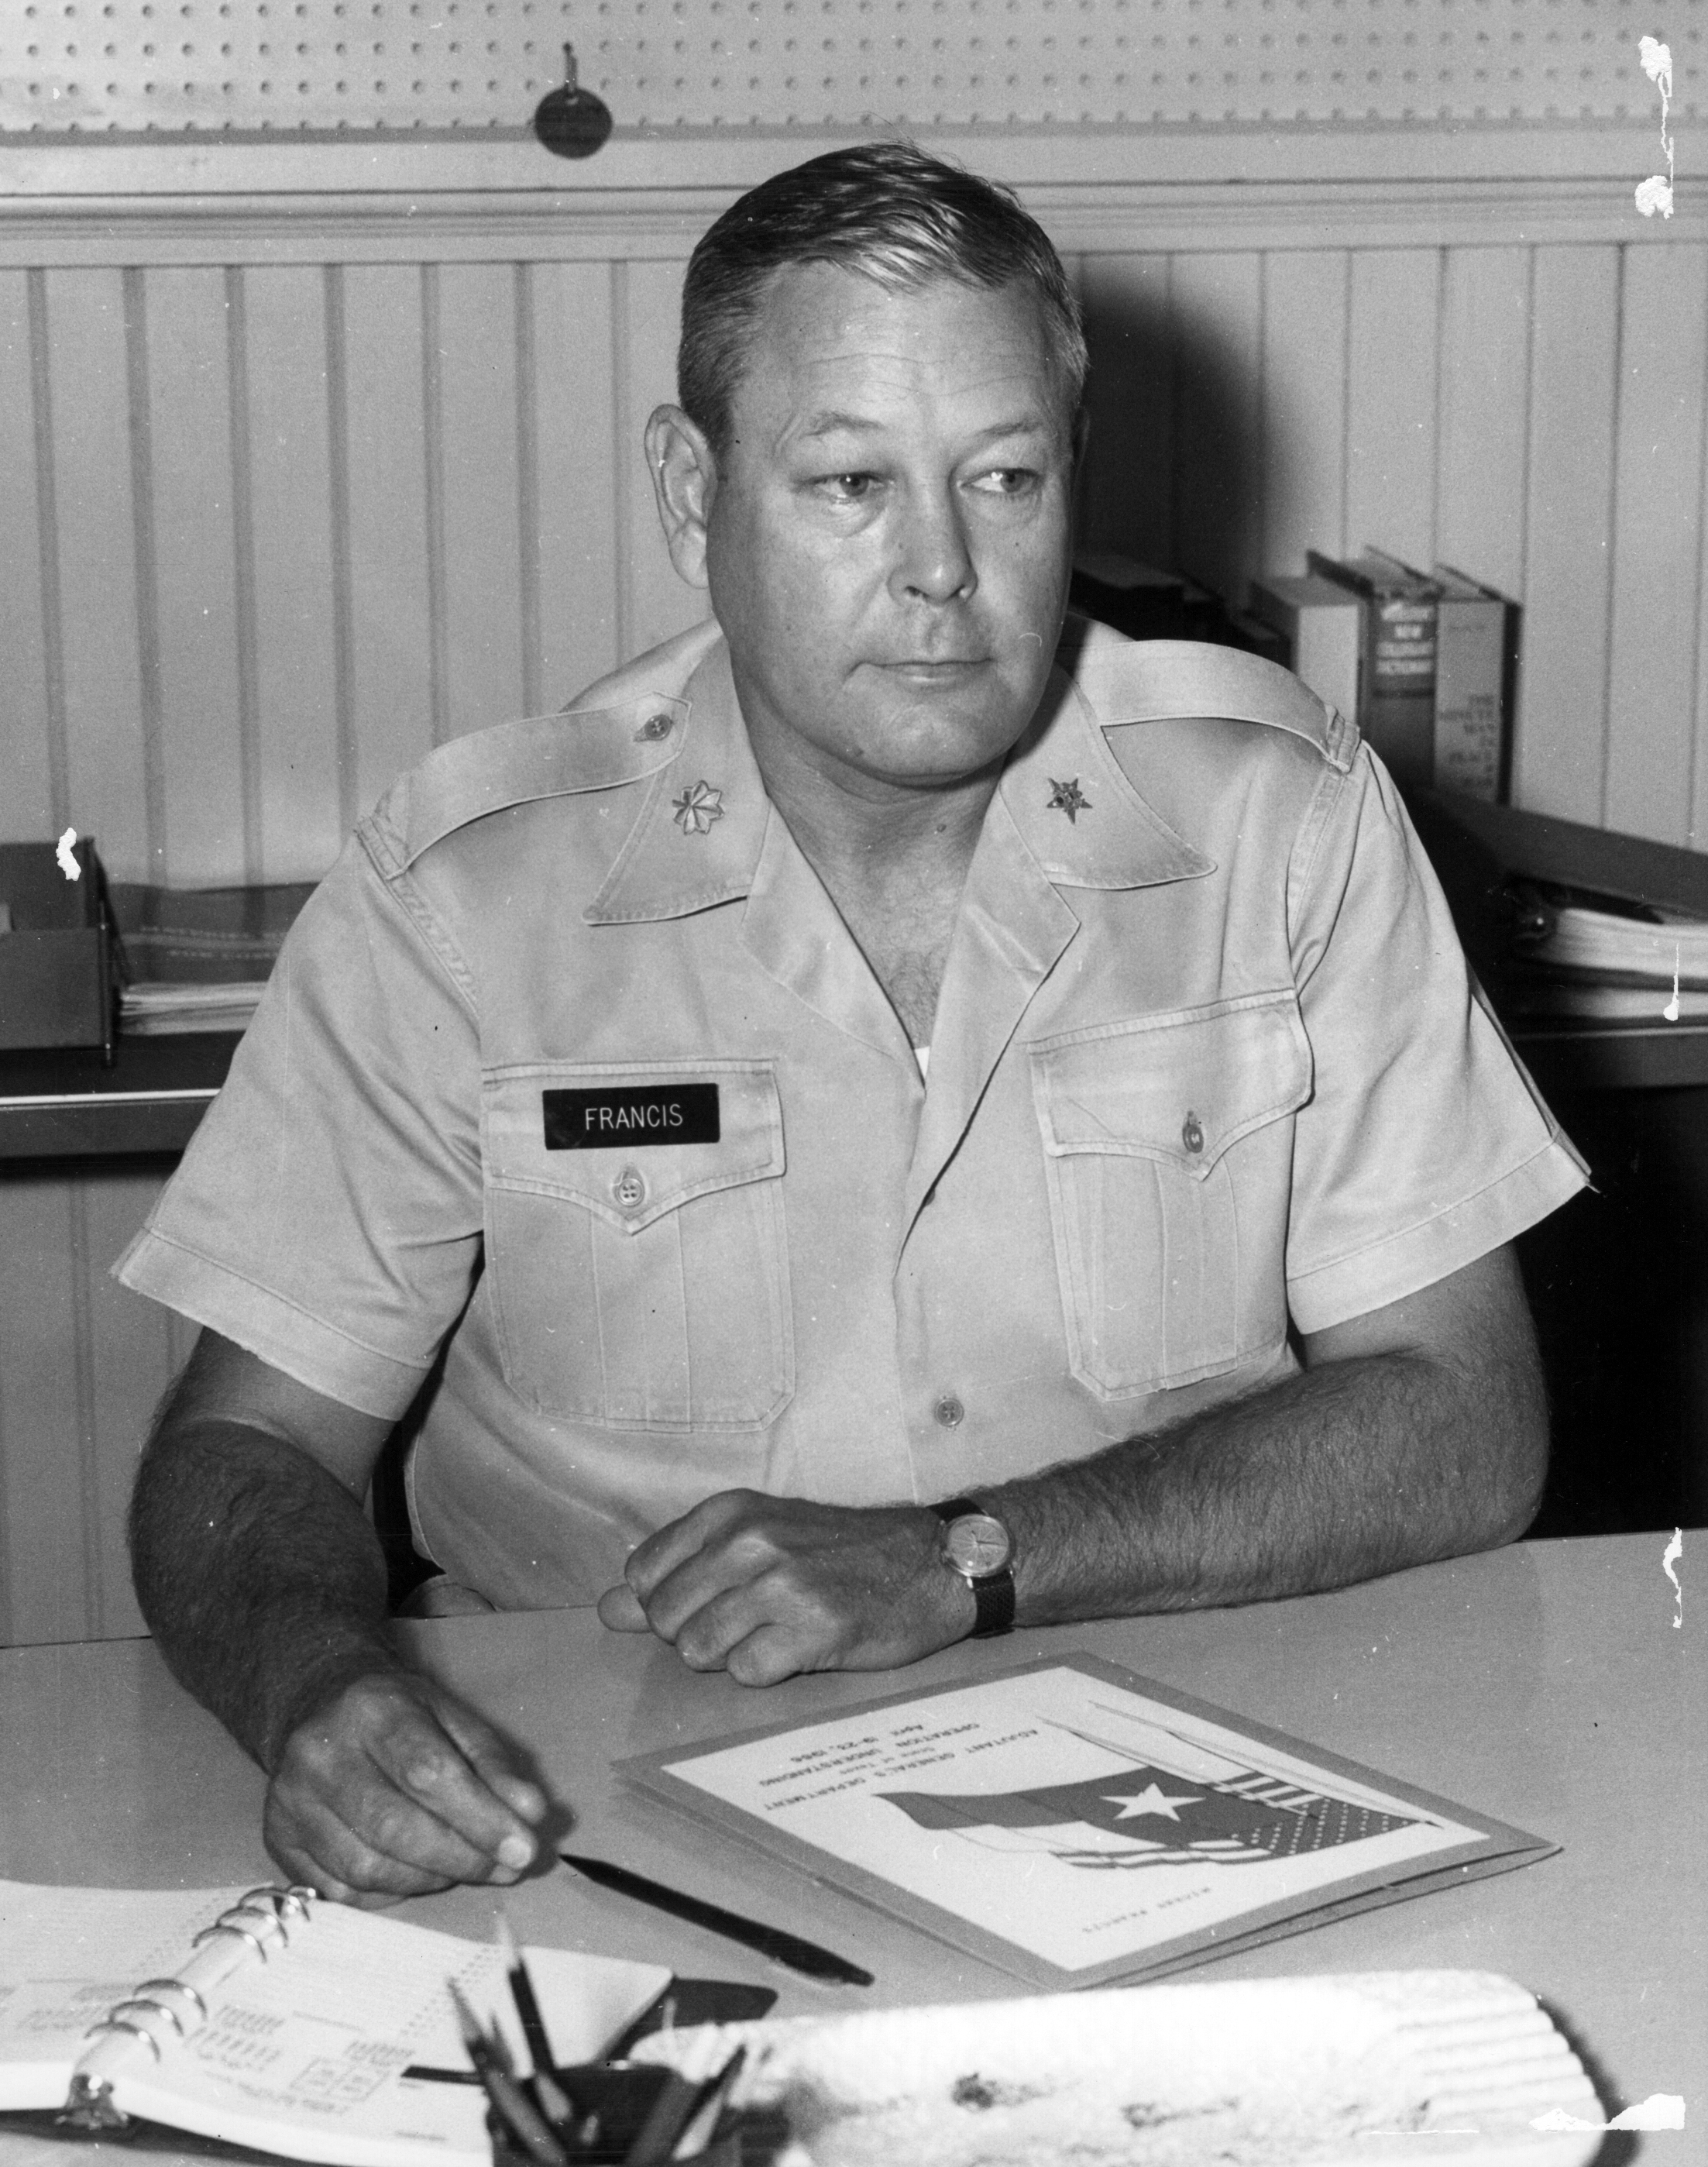 Brigadier General Mickey Francis